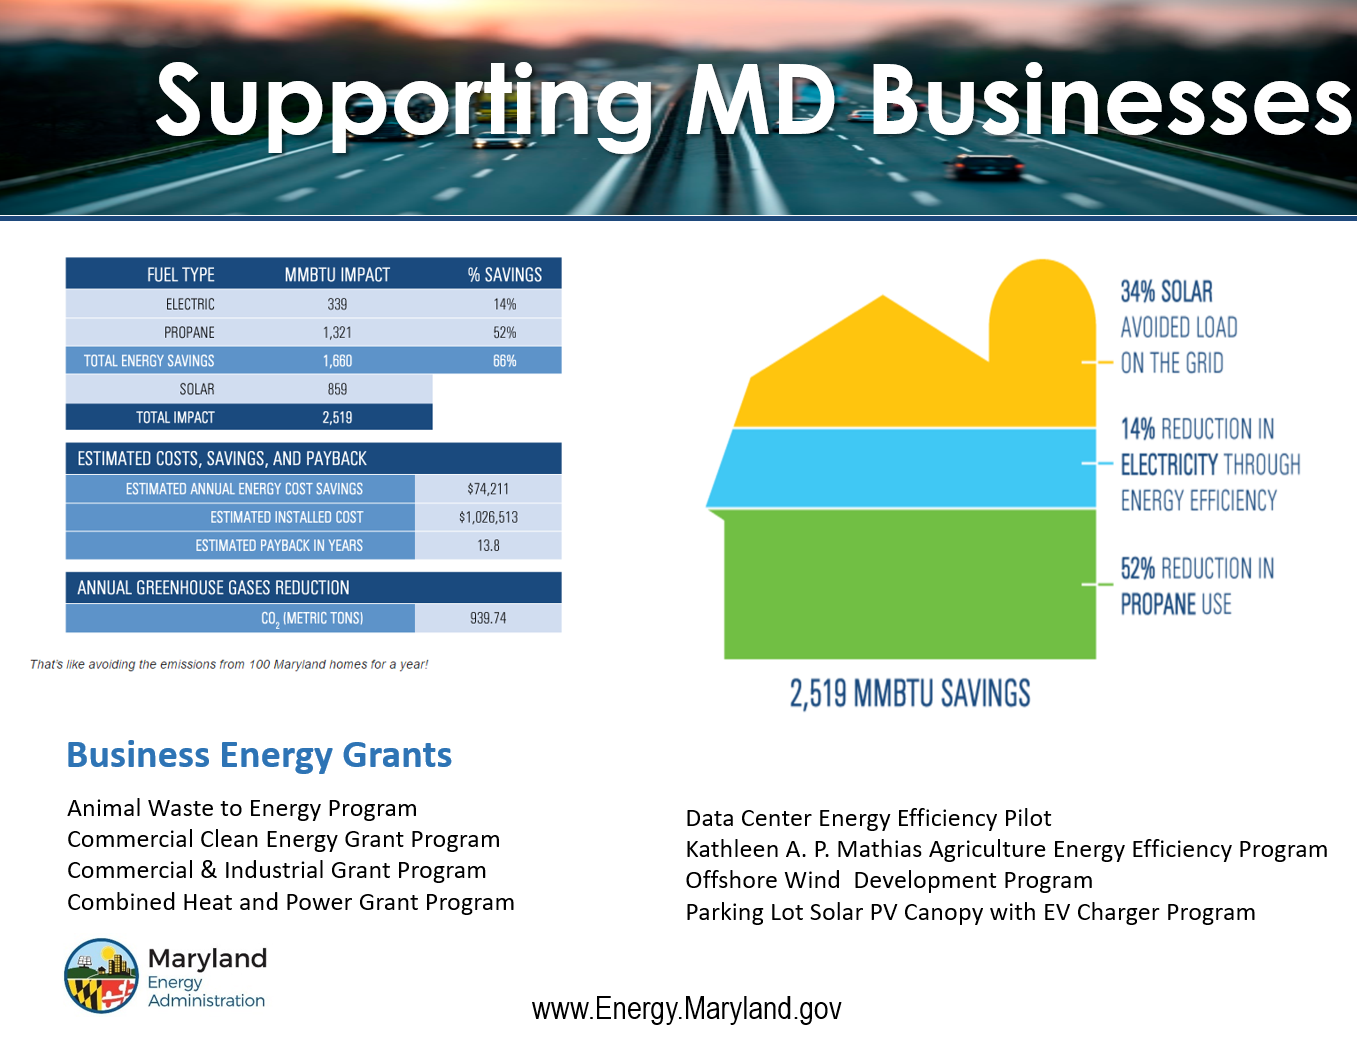 maryland-energy-administration